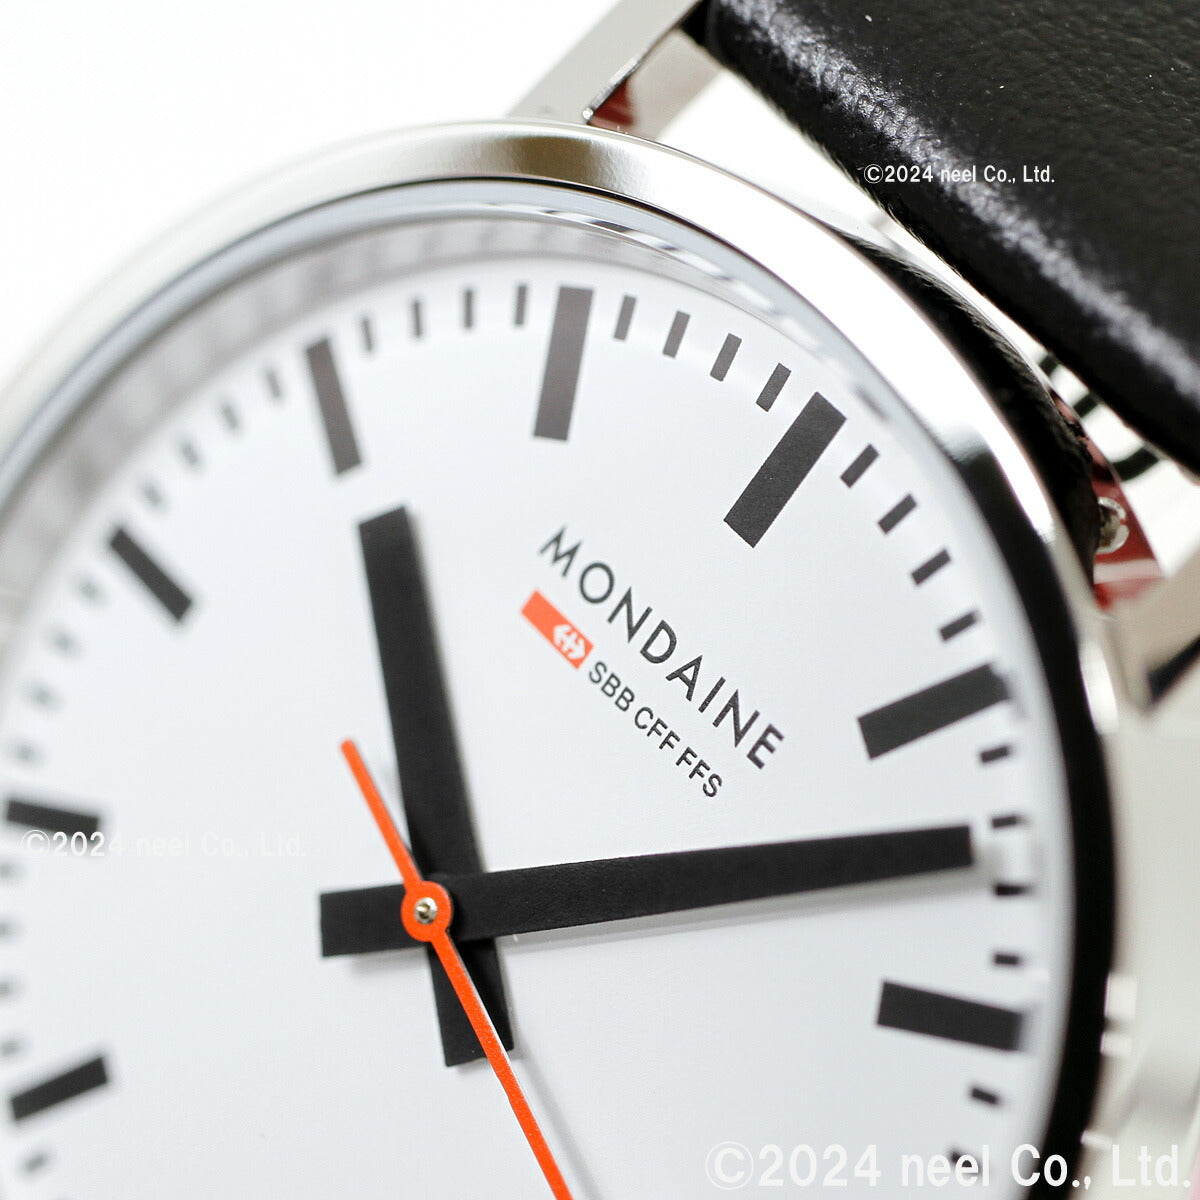 モンディーン MONDAINE 腕時計 メンズ レディース ニュークラシック New Classic スイス A660.30314.11SB –  neel selectshop